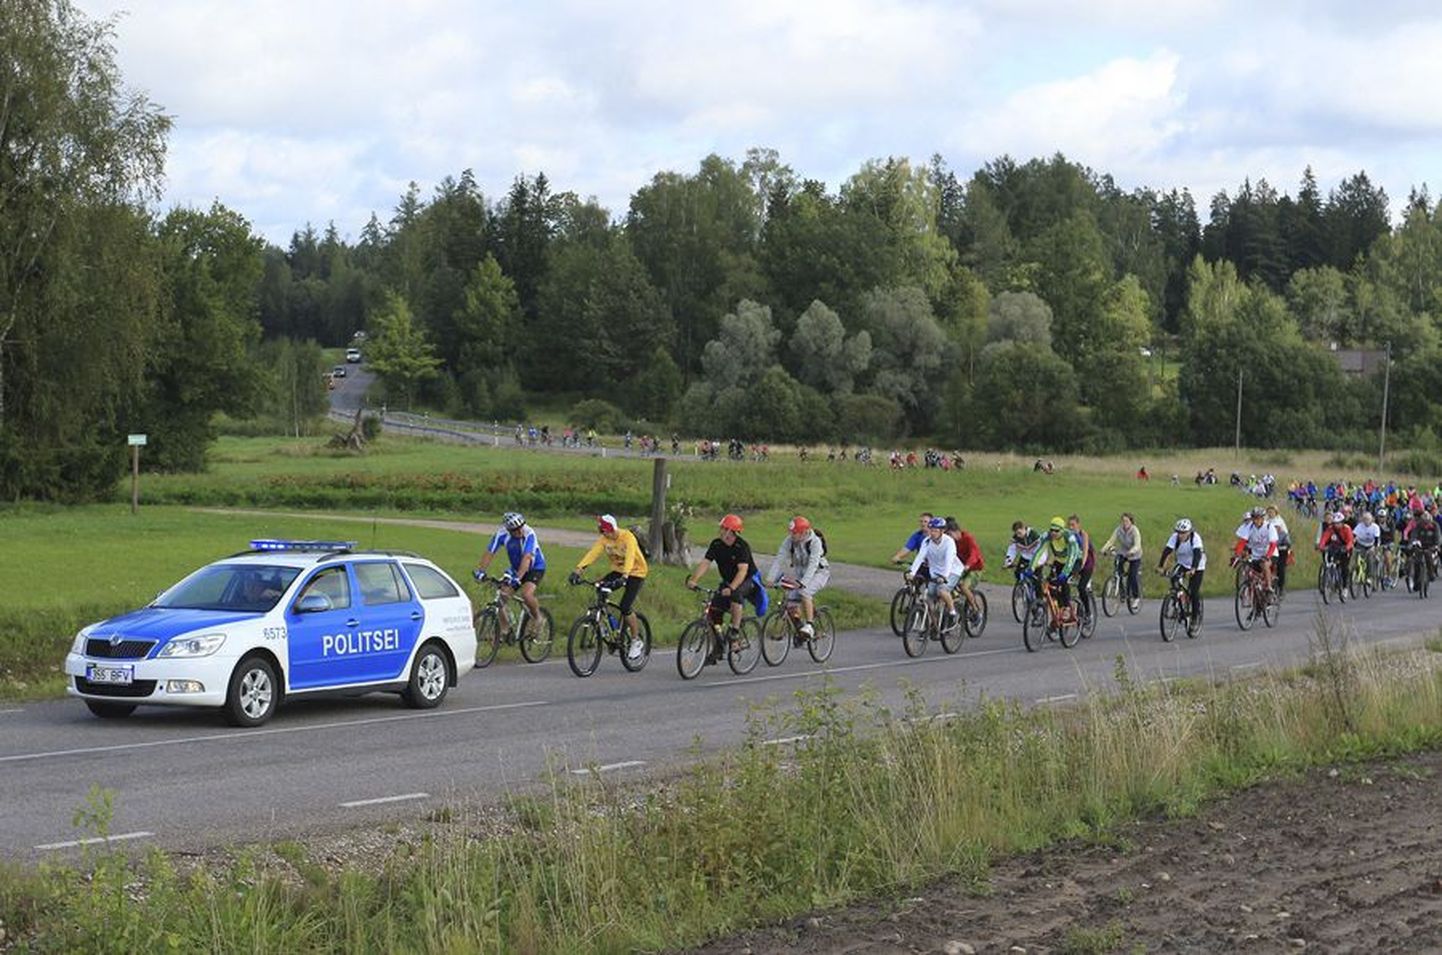 Balti keti aastapäeva auks matkavaid rattureid hoidis Lilli piiripunktini mõõdukas tempos liikumas Eesti politsei.